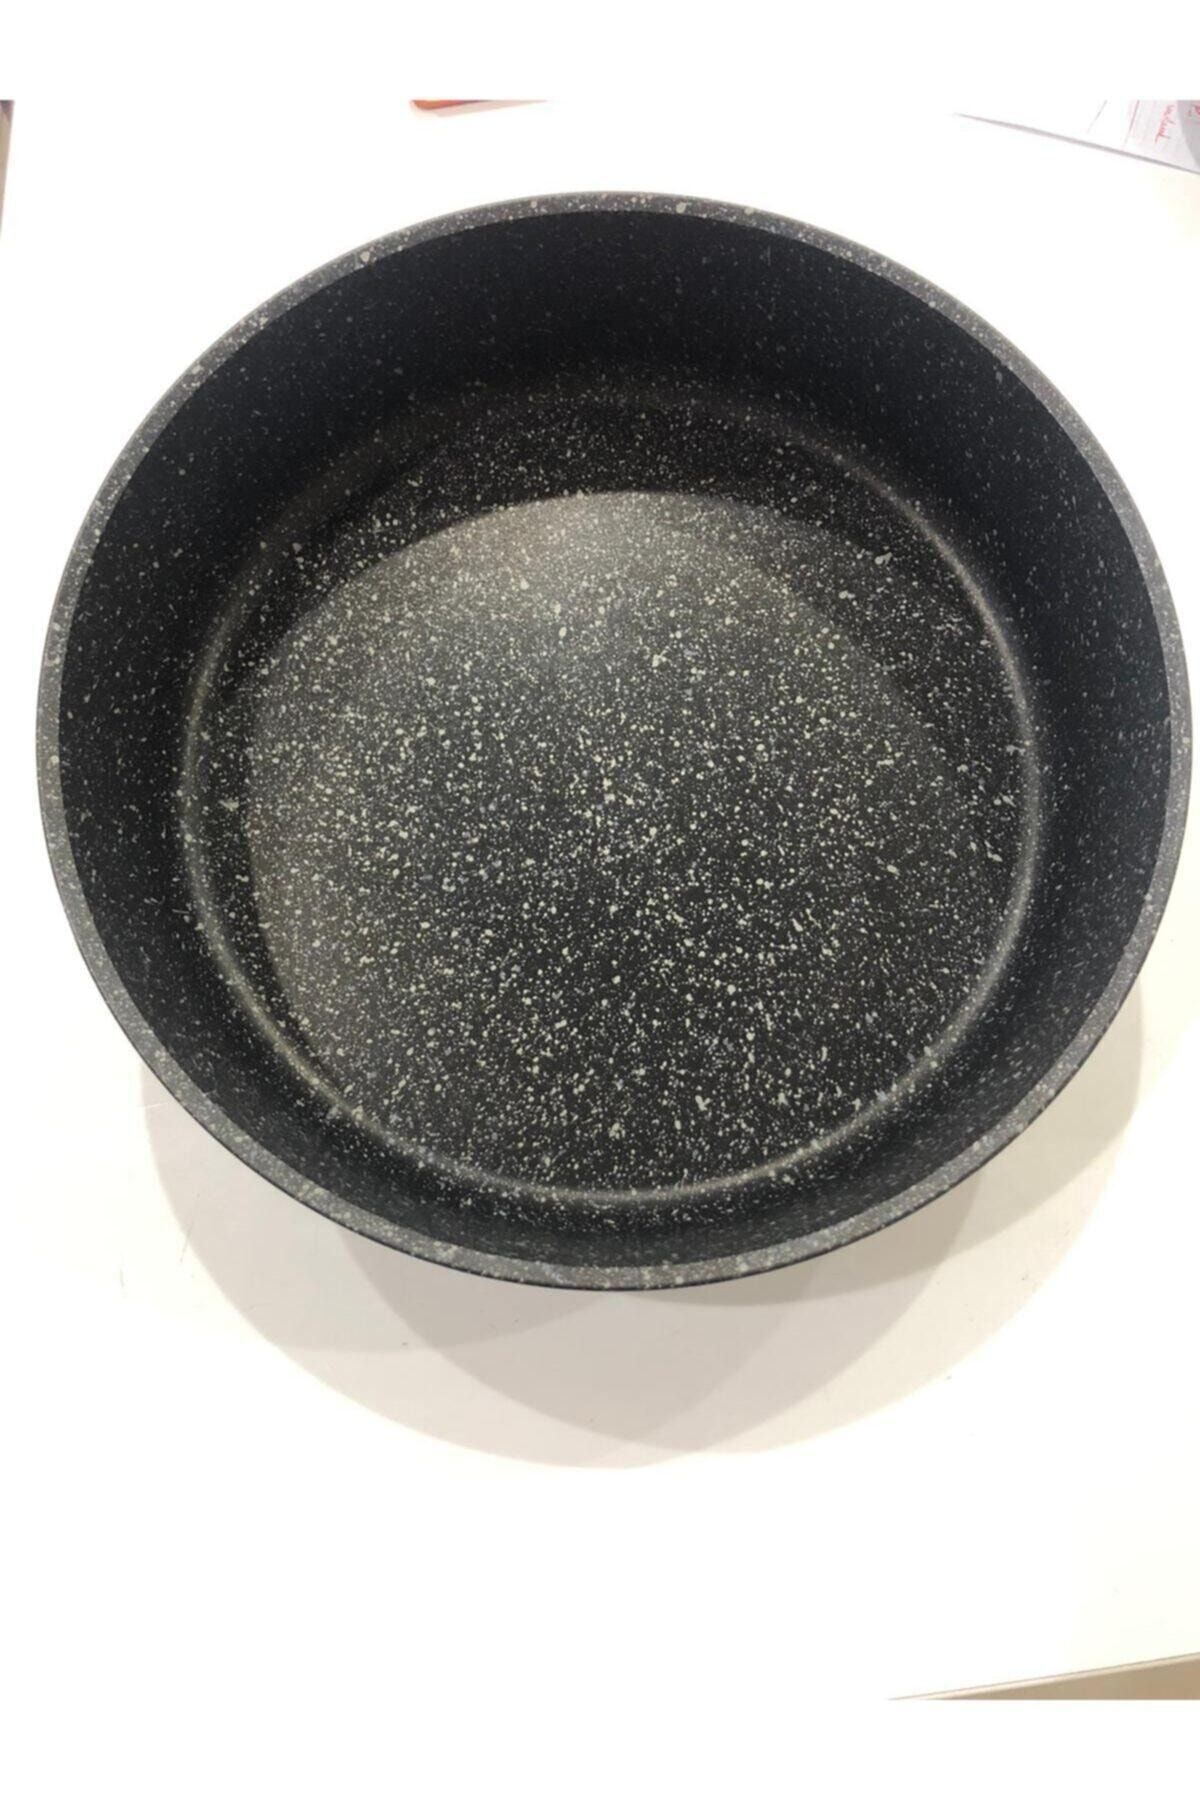 Falez Black Plus Döküm Granit Fırın Tepsisi 28 Cm